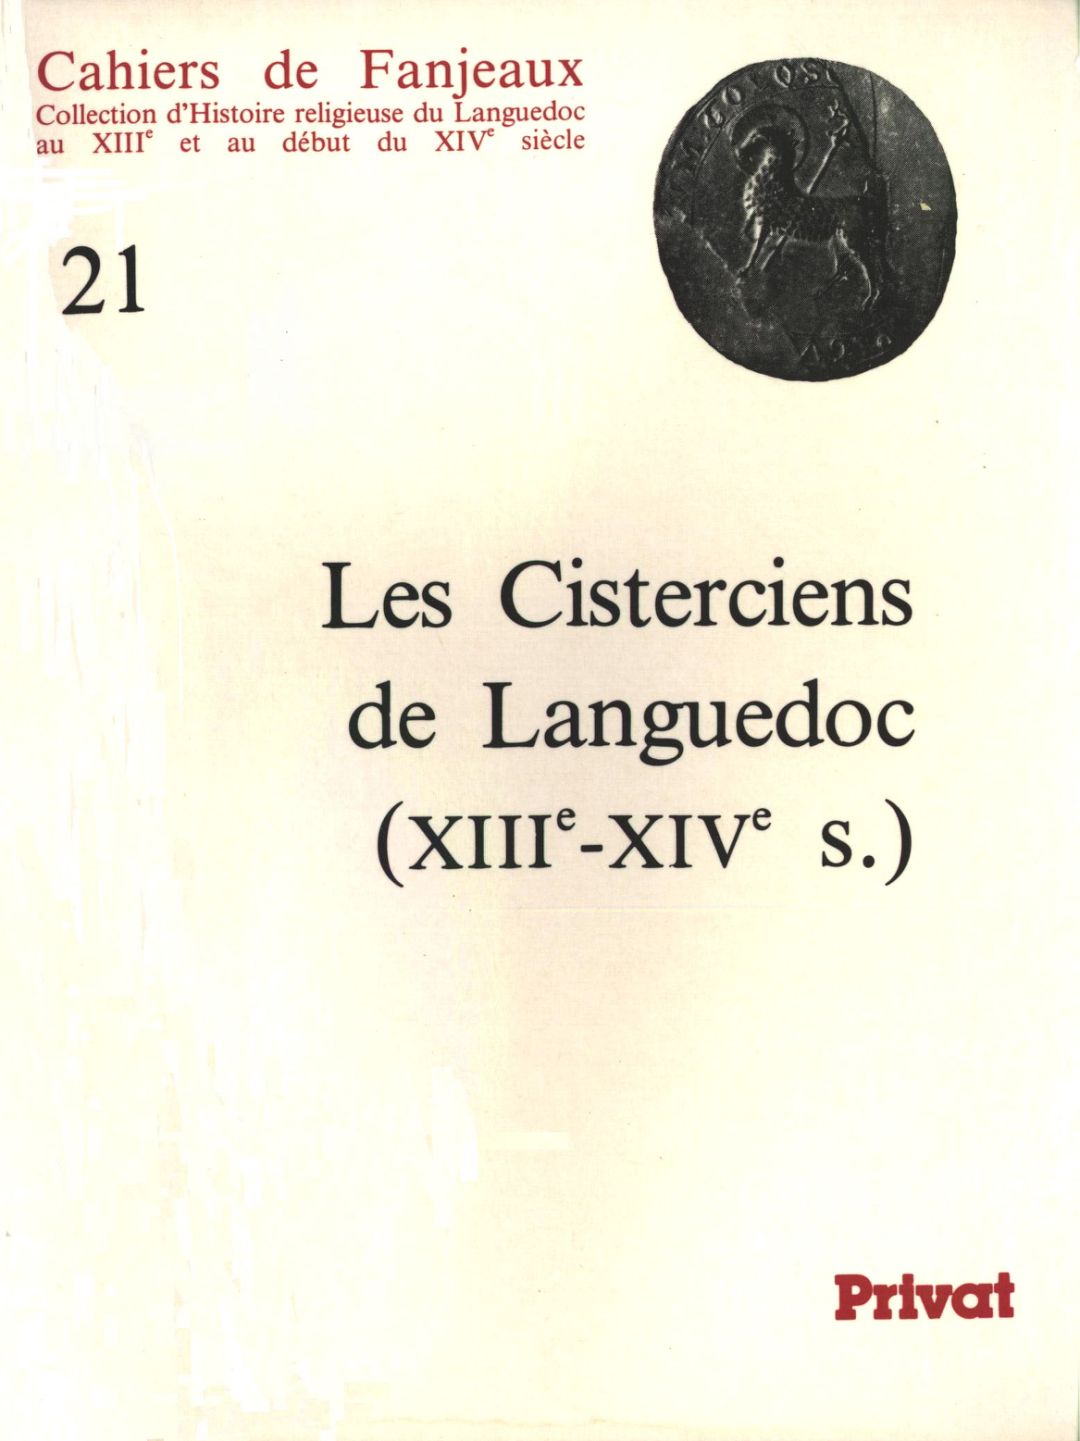 Cisterciens